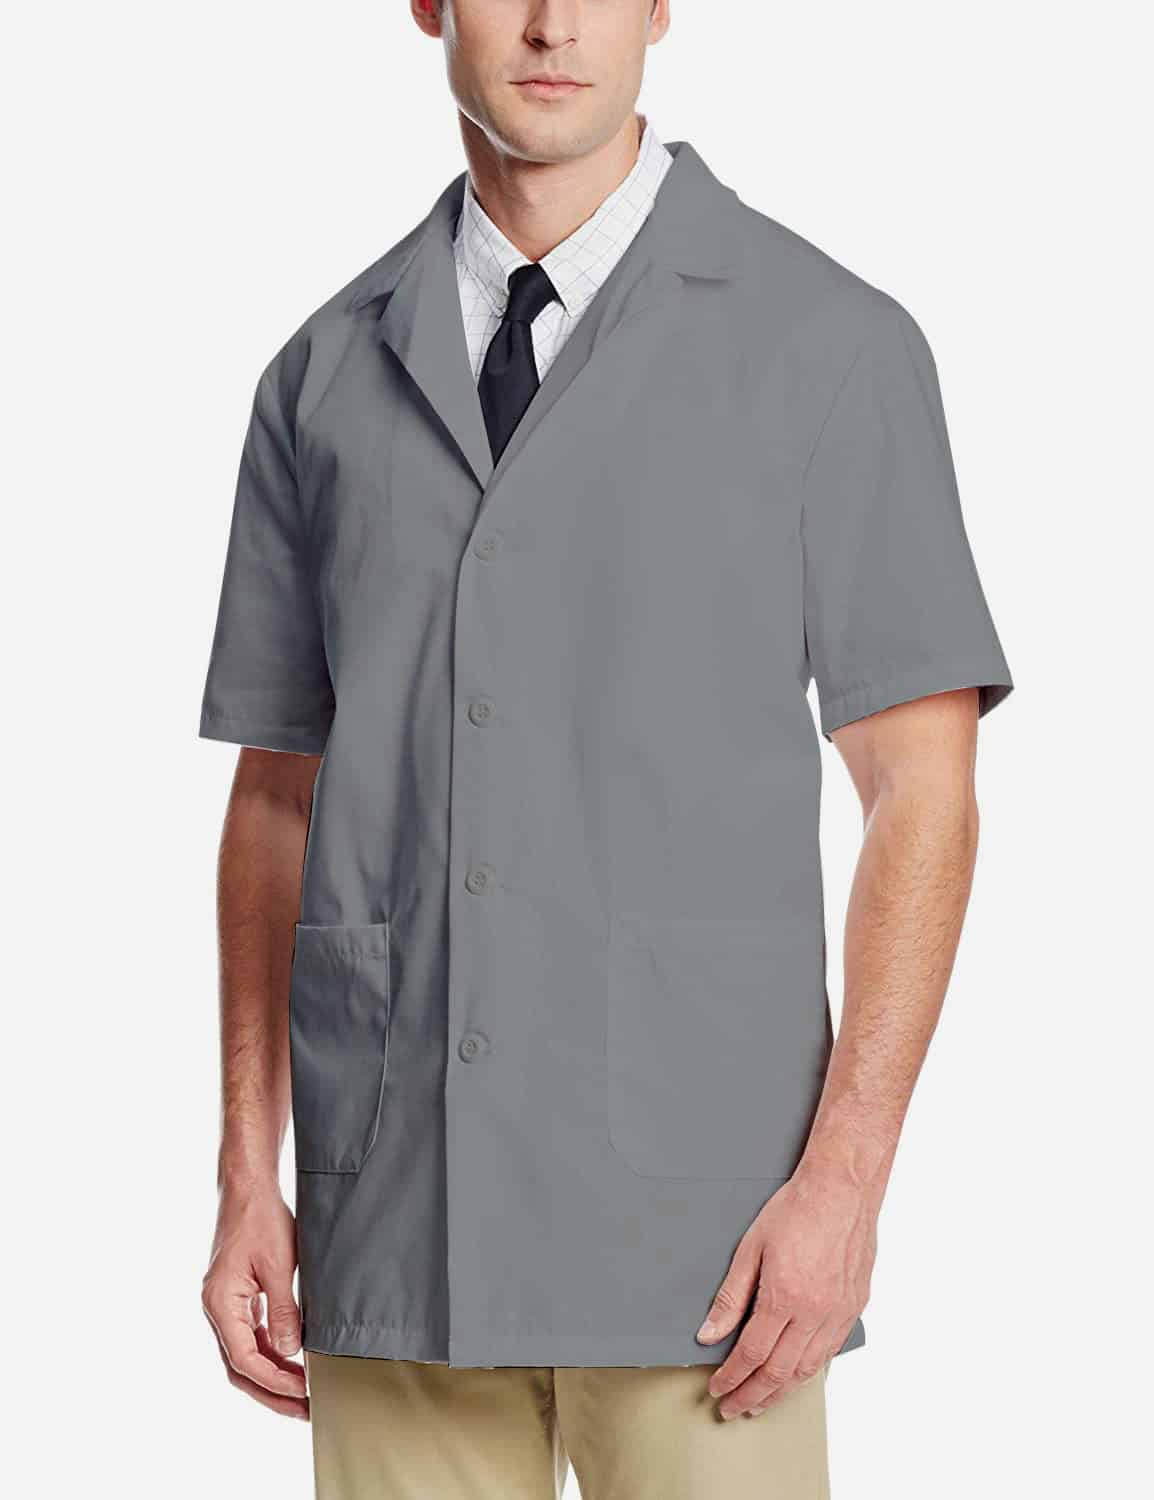 Grey Lab Coat - Half Sleeve